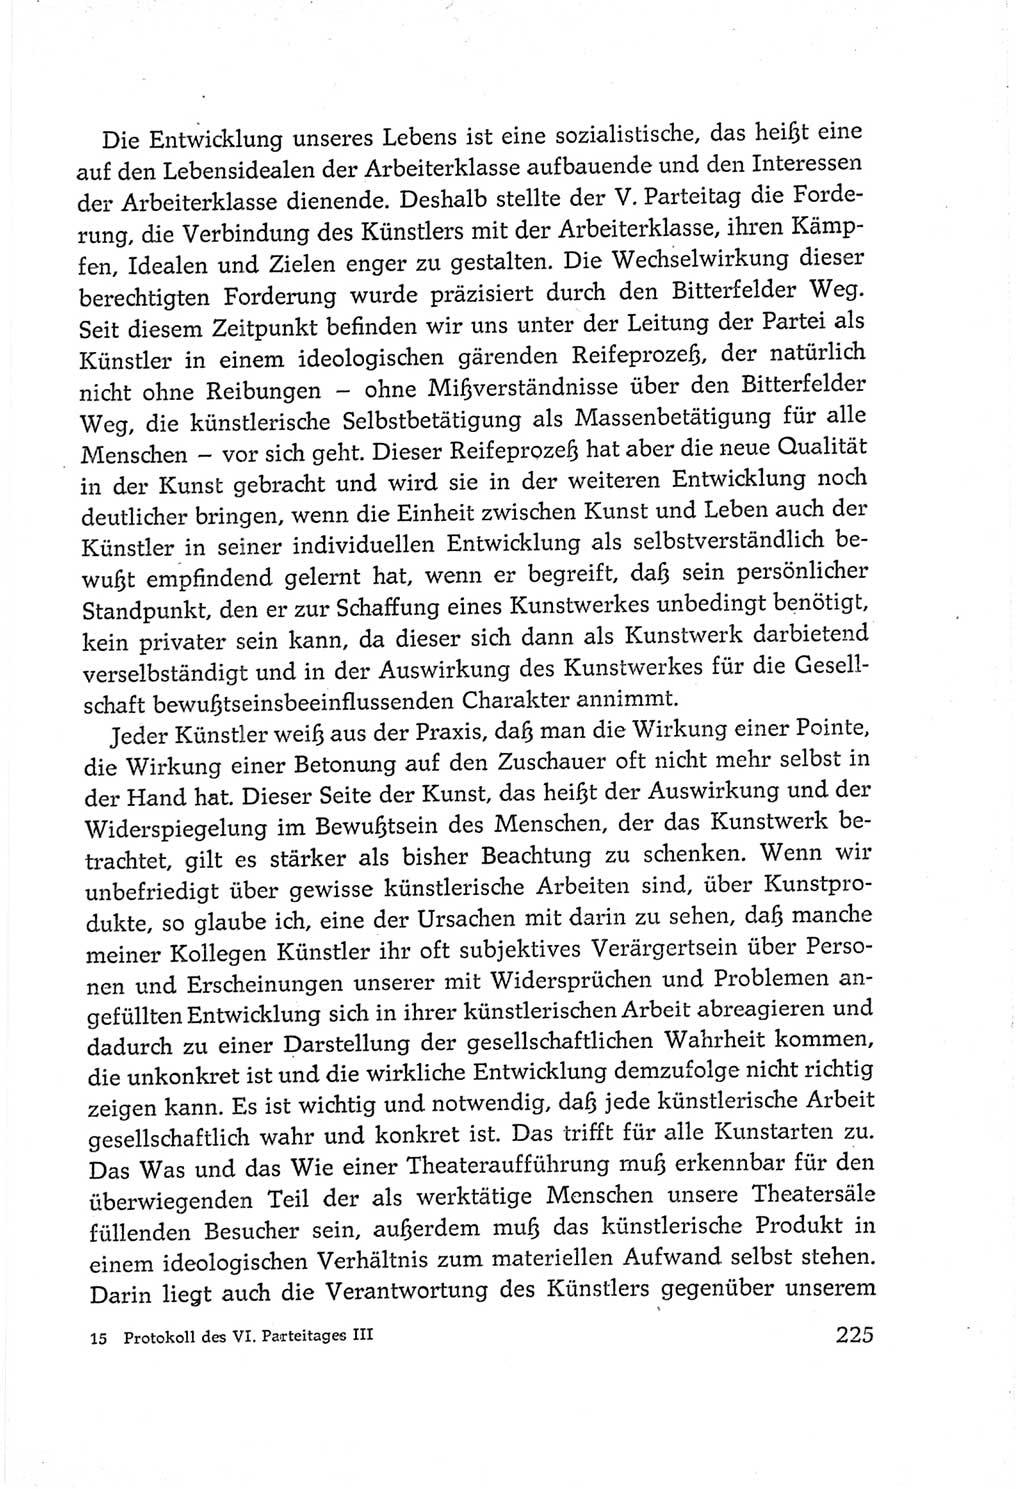 Protokoll der Verhandlungen des Ⅵ. Parteitages der Sozialistischen Einheitspartei Deutschlands (SED) [Deutsche Demokratische Republik (DDR)] 1963, Band Ⅲ, Seite 225 (Prot. Verh. Ⅵ. PT SED DDR 1963, Bd. Ⅲ, S. 225)